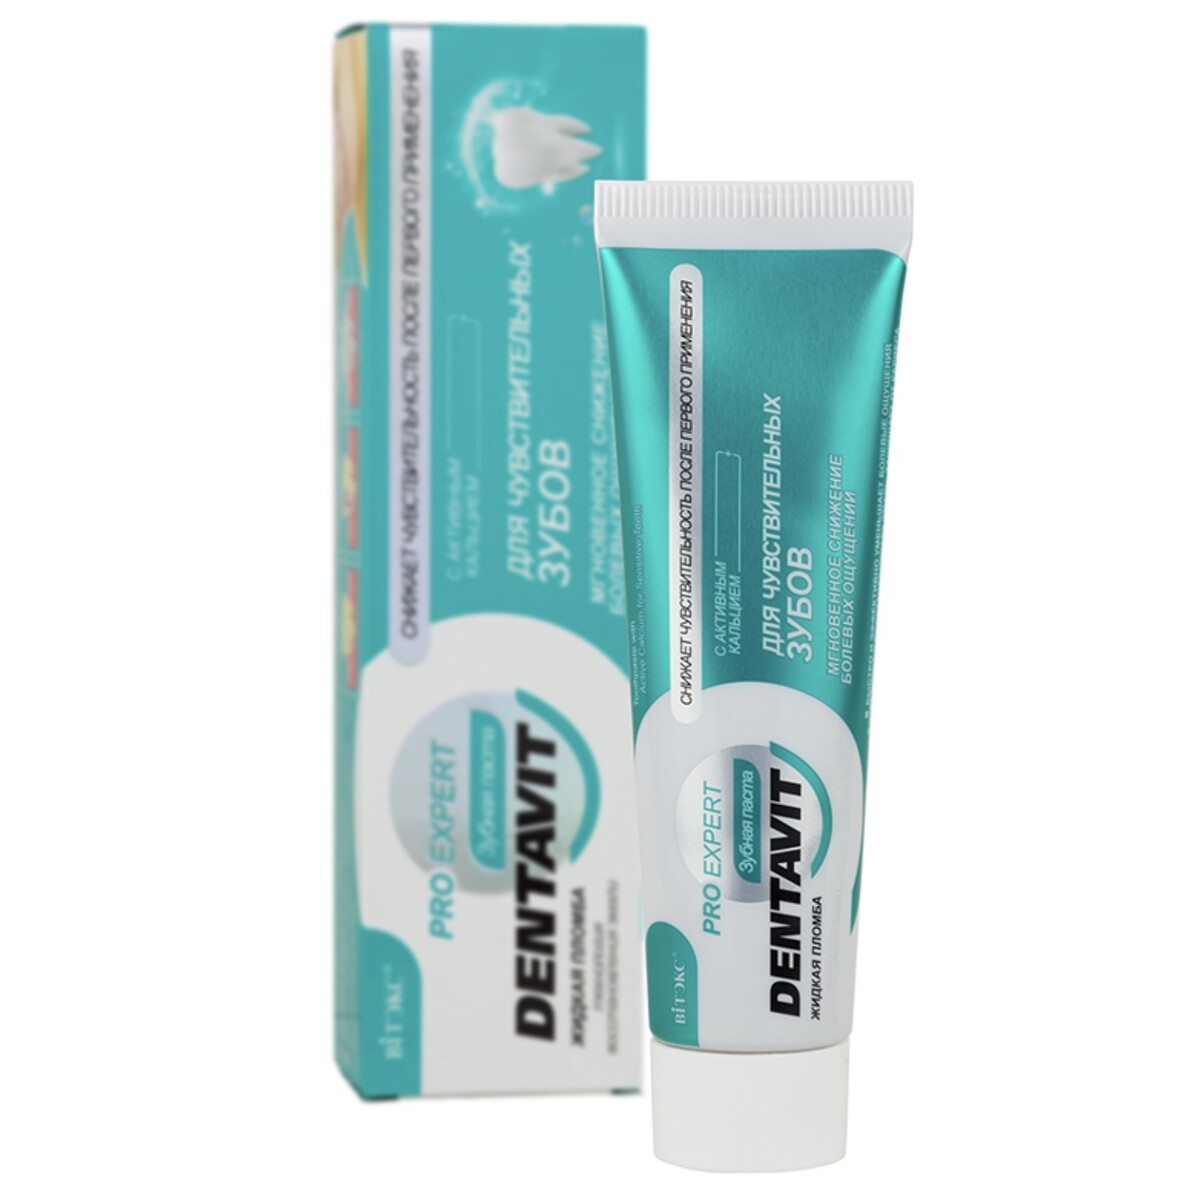 Dentavit pro expert зубная паста для чувствительных зубов с активным кальцием, 85 г.+ коробка солгар ю кьюбс с кальцием и витамином d3 пастилки 60